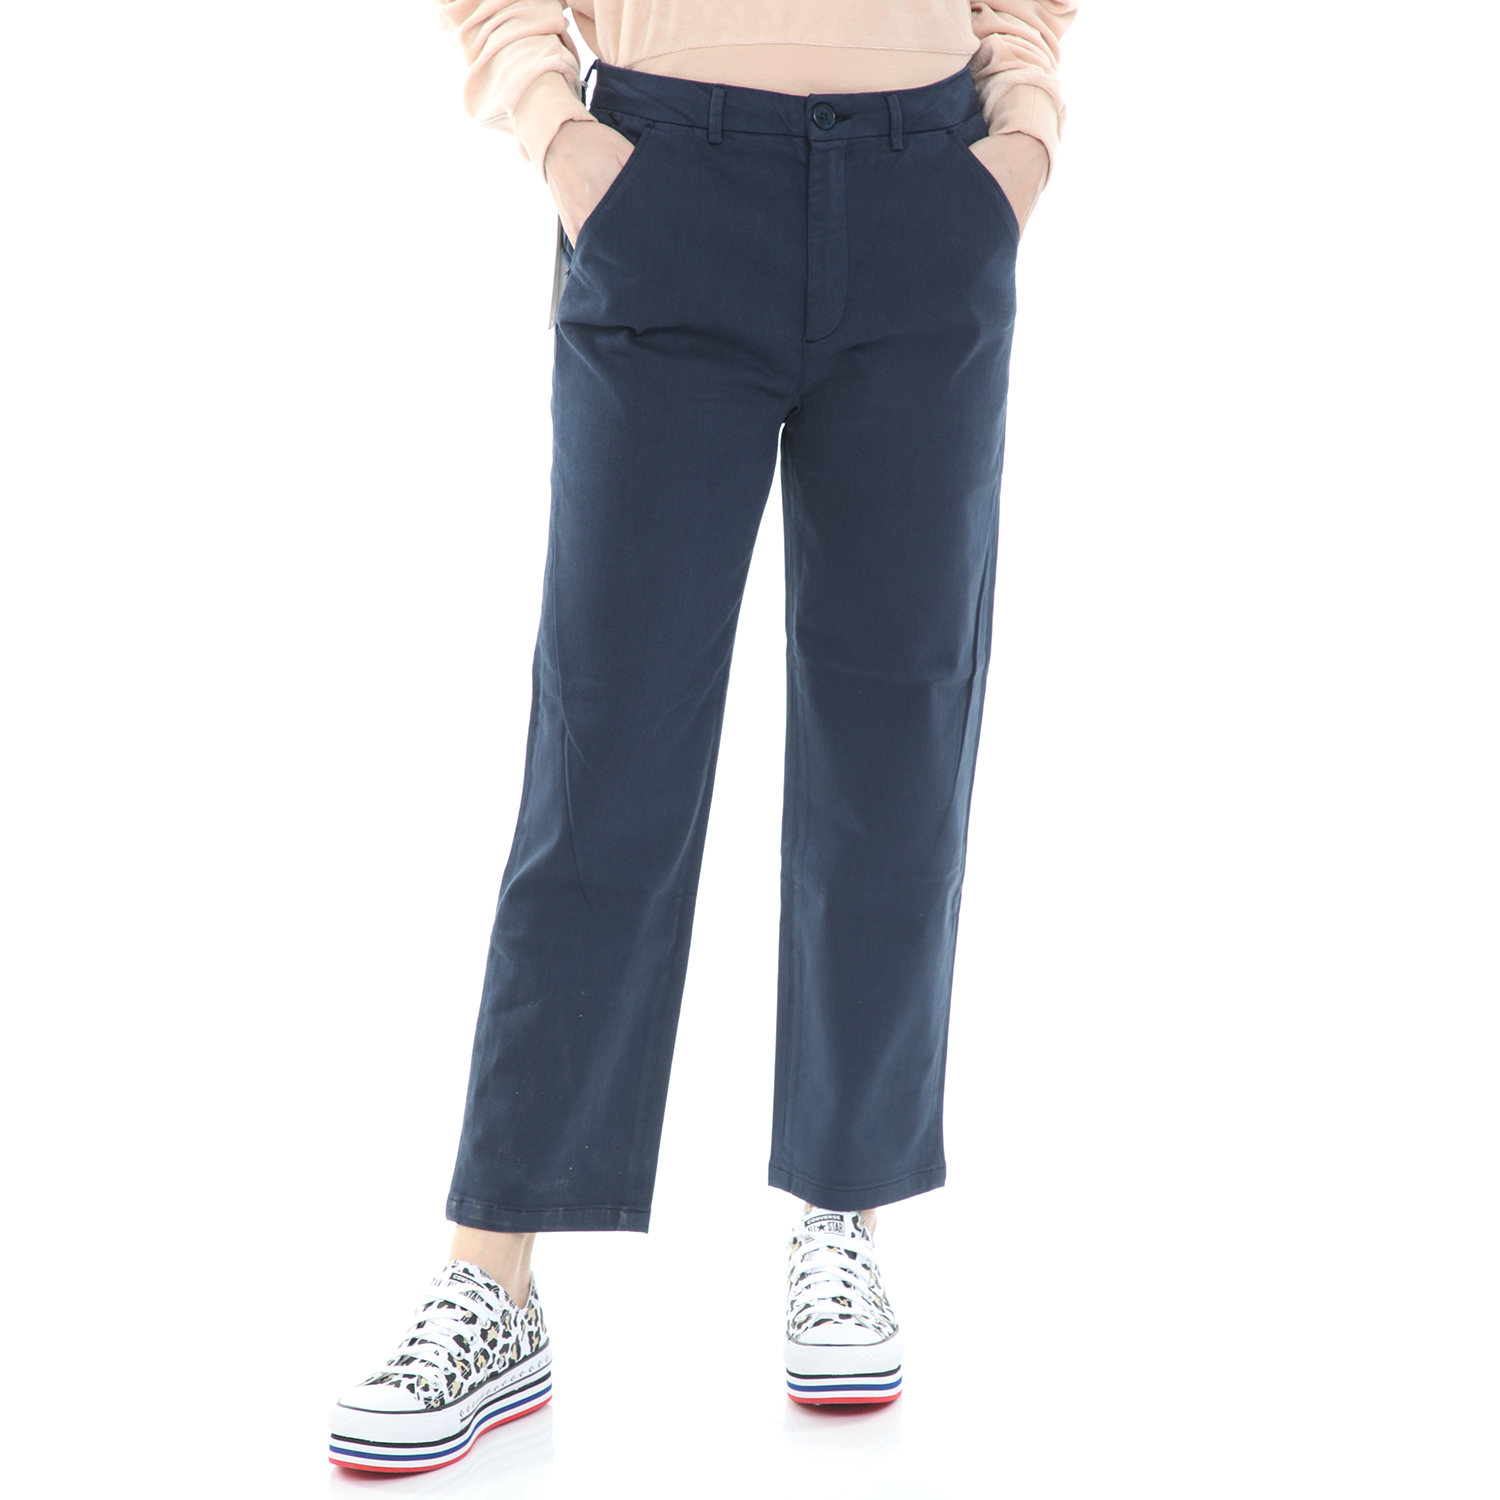 Γυναικεία/Ρούχα/Παντελόνια/Ισια Γραμμή REIKO - Γυναικείο παντελόνι cropped REIKO SANDY HIGH μπλε